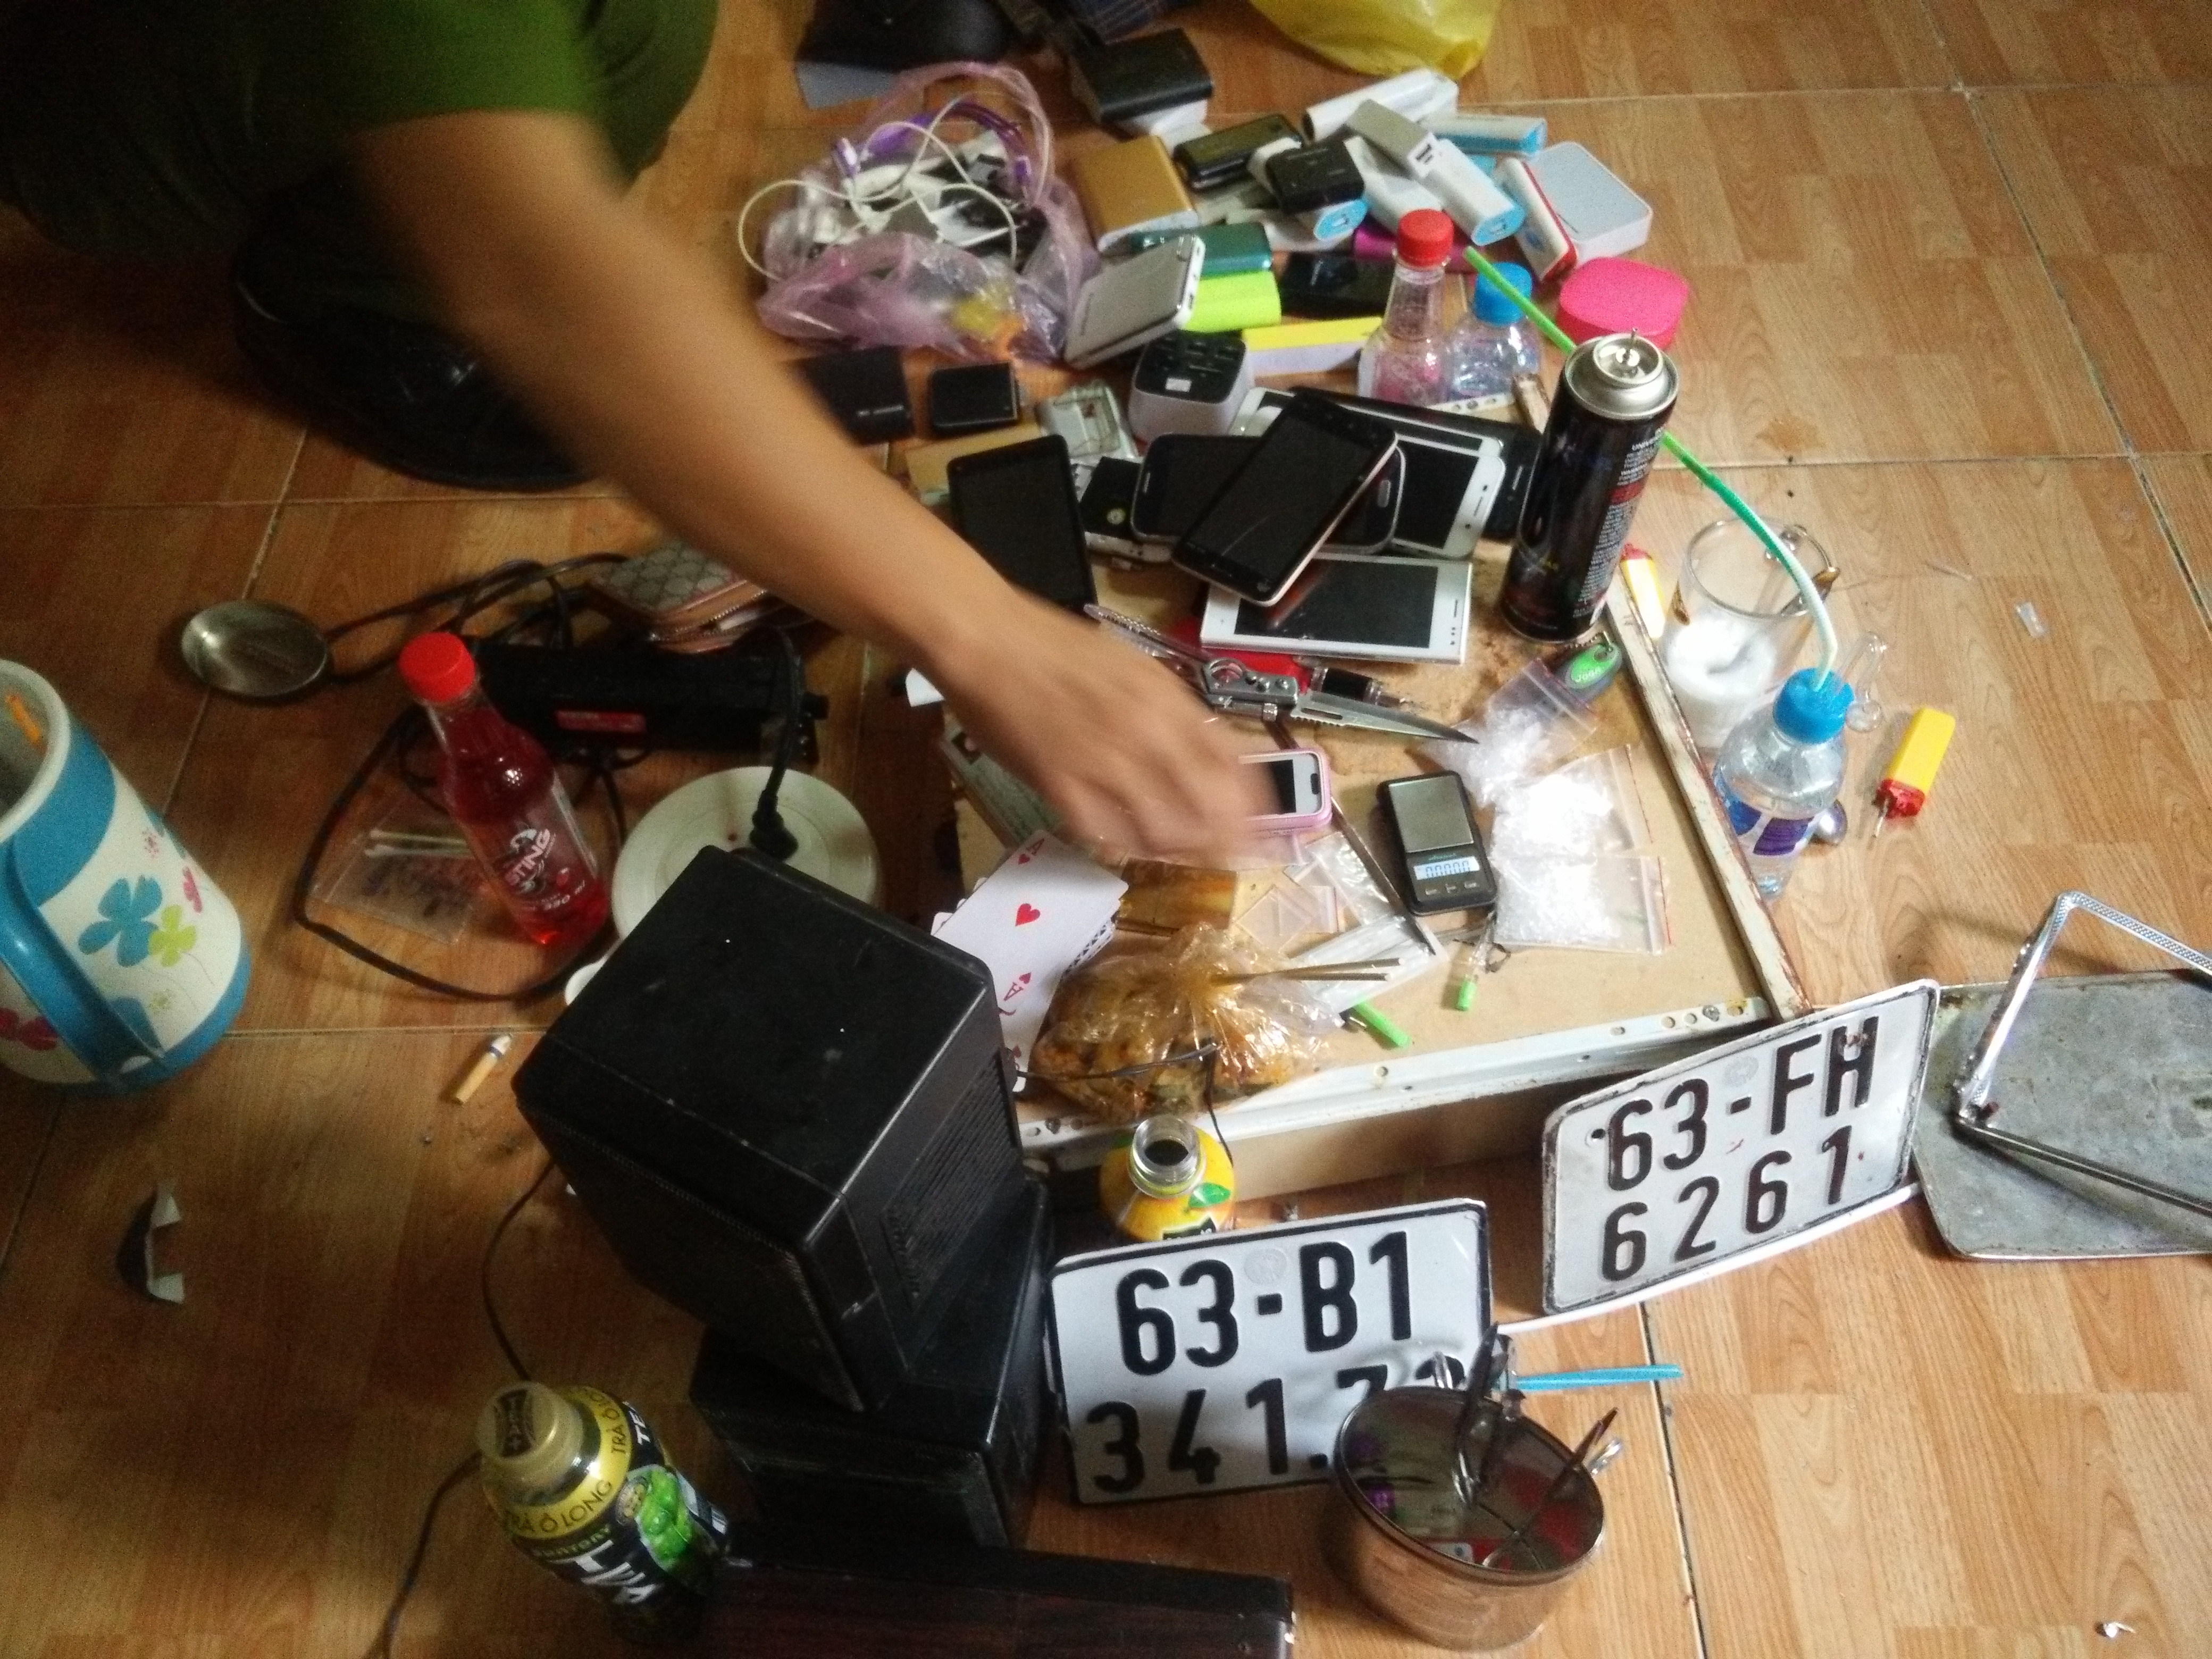 Điện thoại, biển số giả, dụng cụ sử dụng ma túy đá được công an phát hiện trong các phòng ở Khách sạn Tân Kim Sơn - Ảnh: CTV